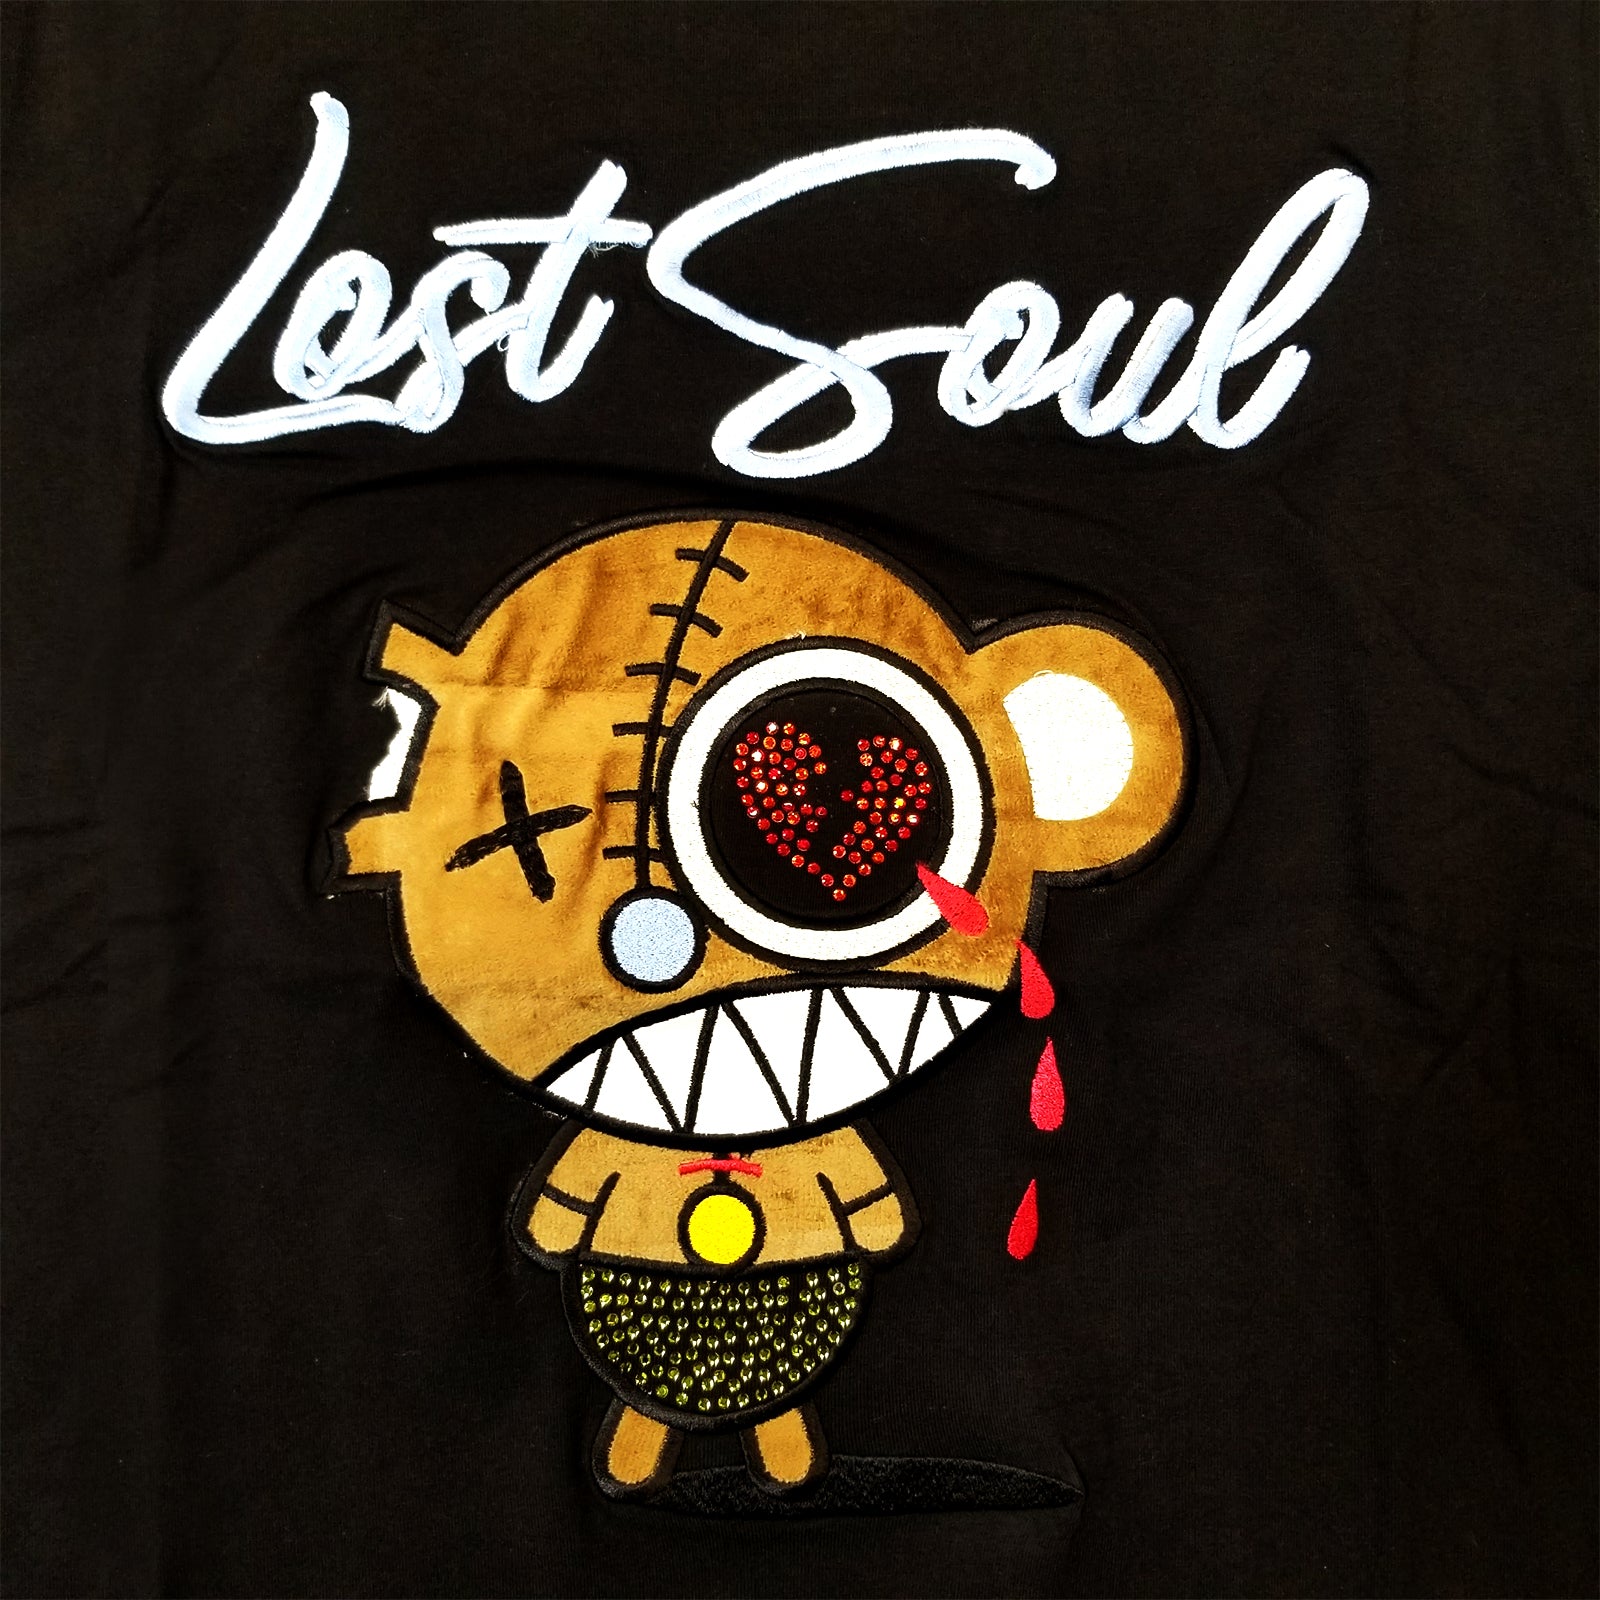 Men's "Lost Soul" T-Shirt | Black